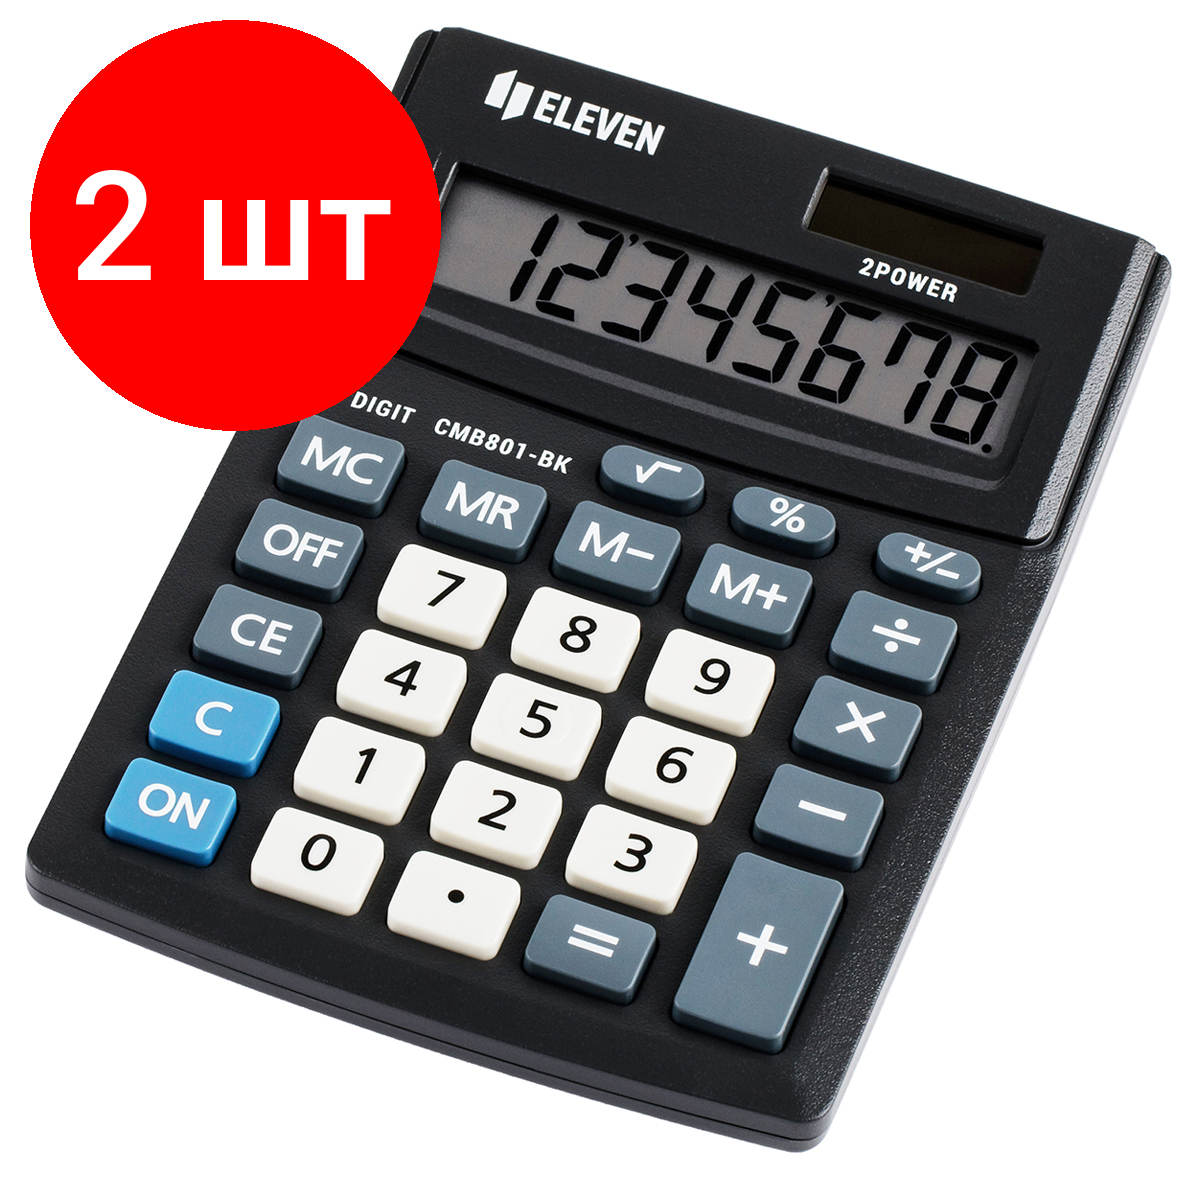 Комплект 2 шт, Калькулятор настольный Eleven Business Line CMB801-BK, 8 разрядов, двойное питание, 102*137*31мм, черный